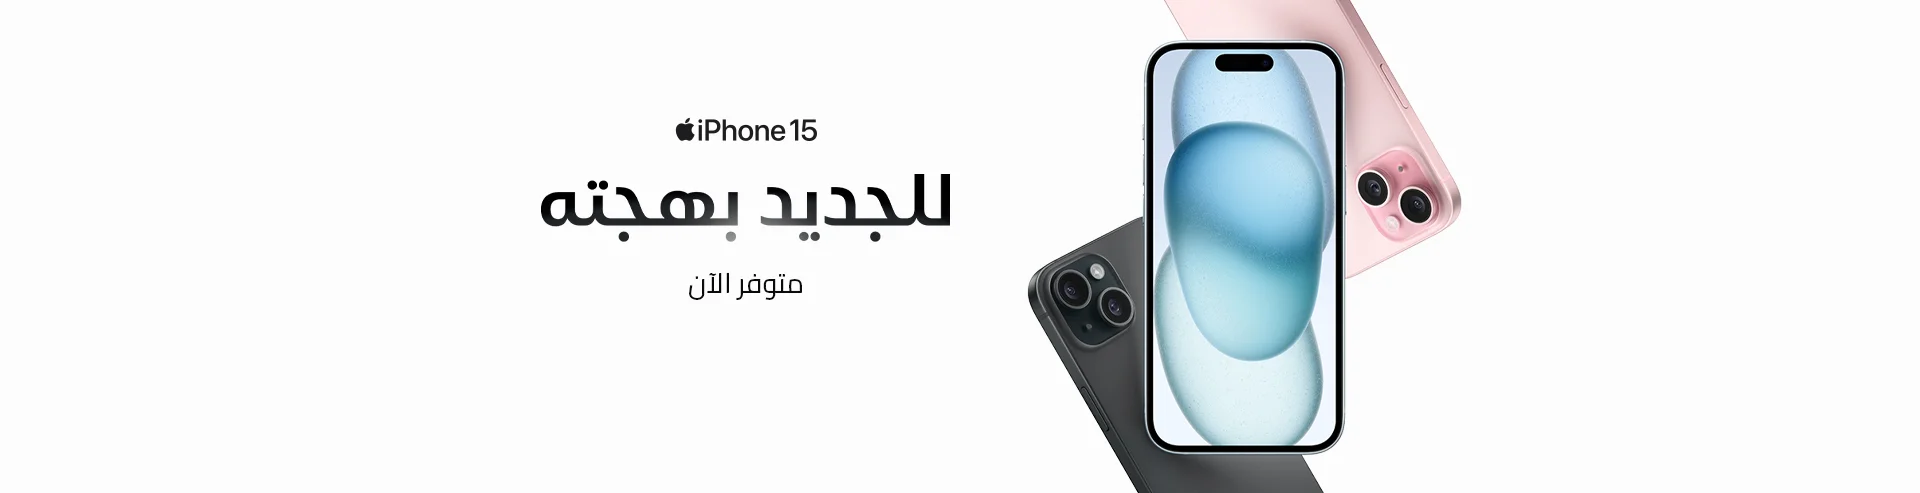 VM-Hero-iPhone-15-Available-Now-23-AR-1920x493.webp